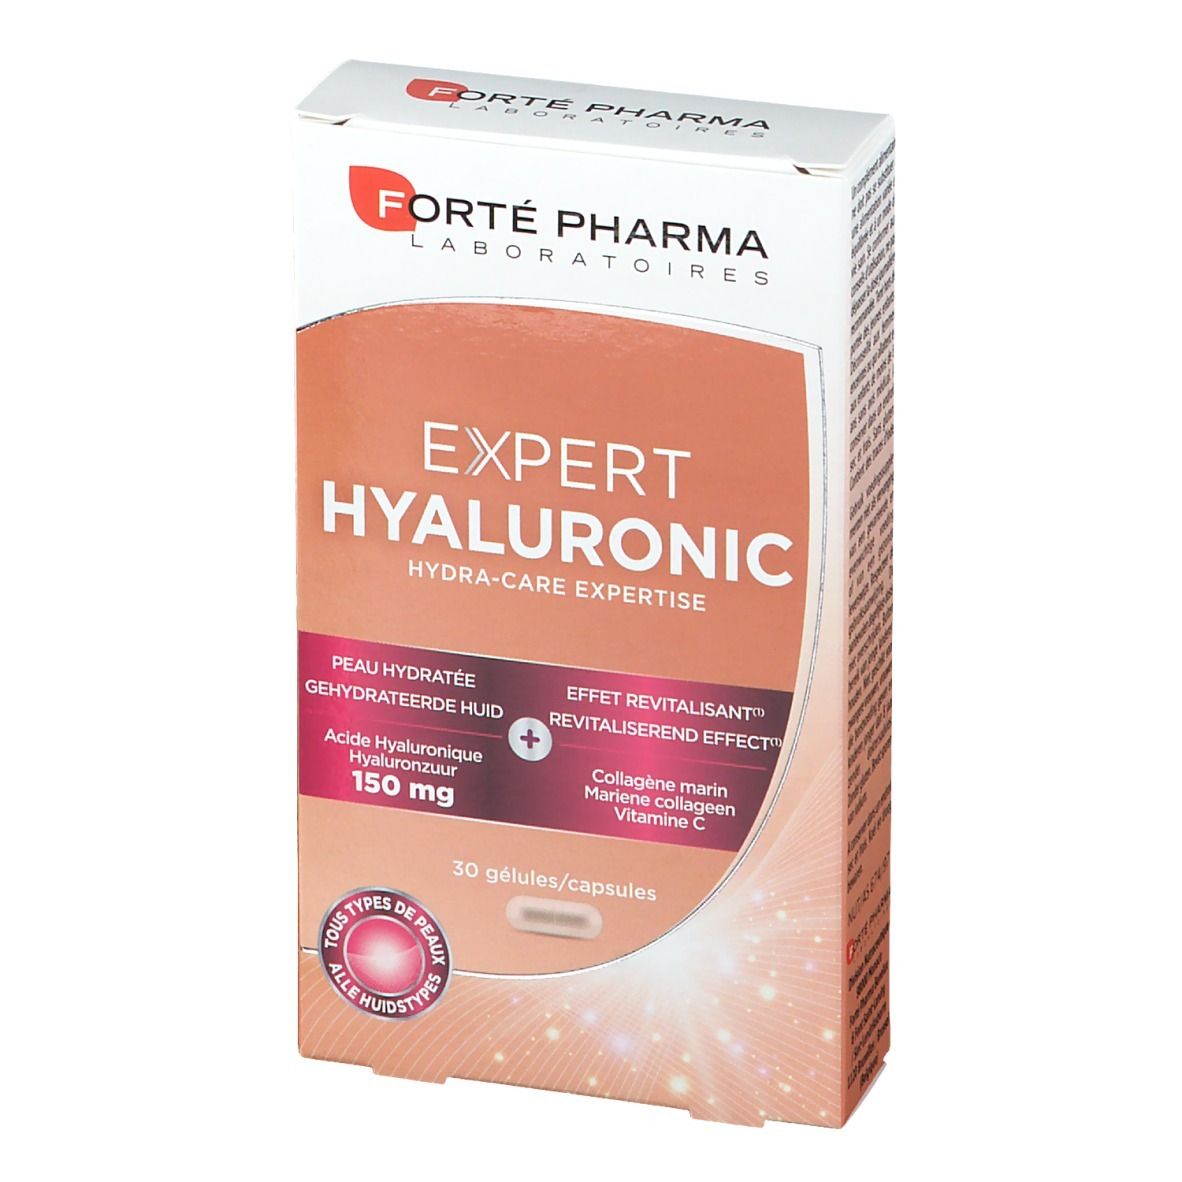 Forté Pharma Expert Hyaluronic